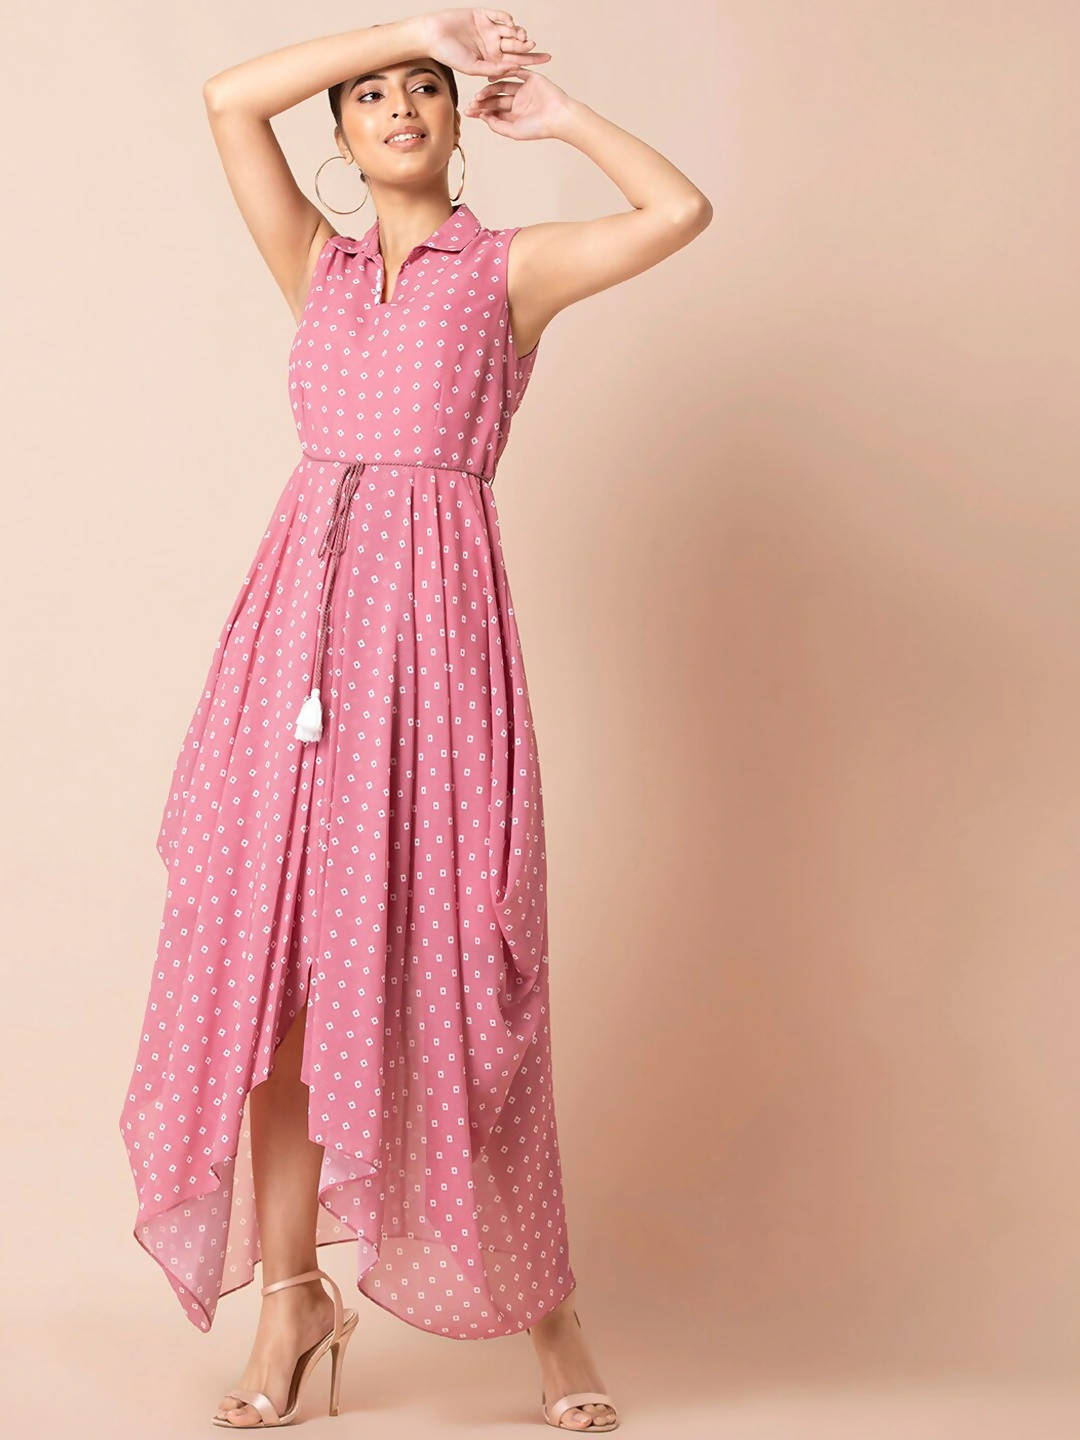 Indya Pink & White Bandhani Printed Maxi Dress - Distacart